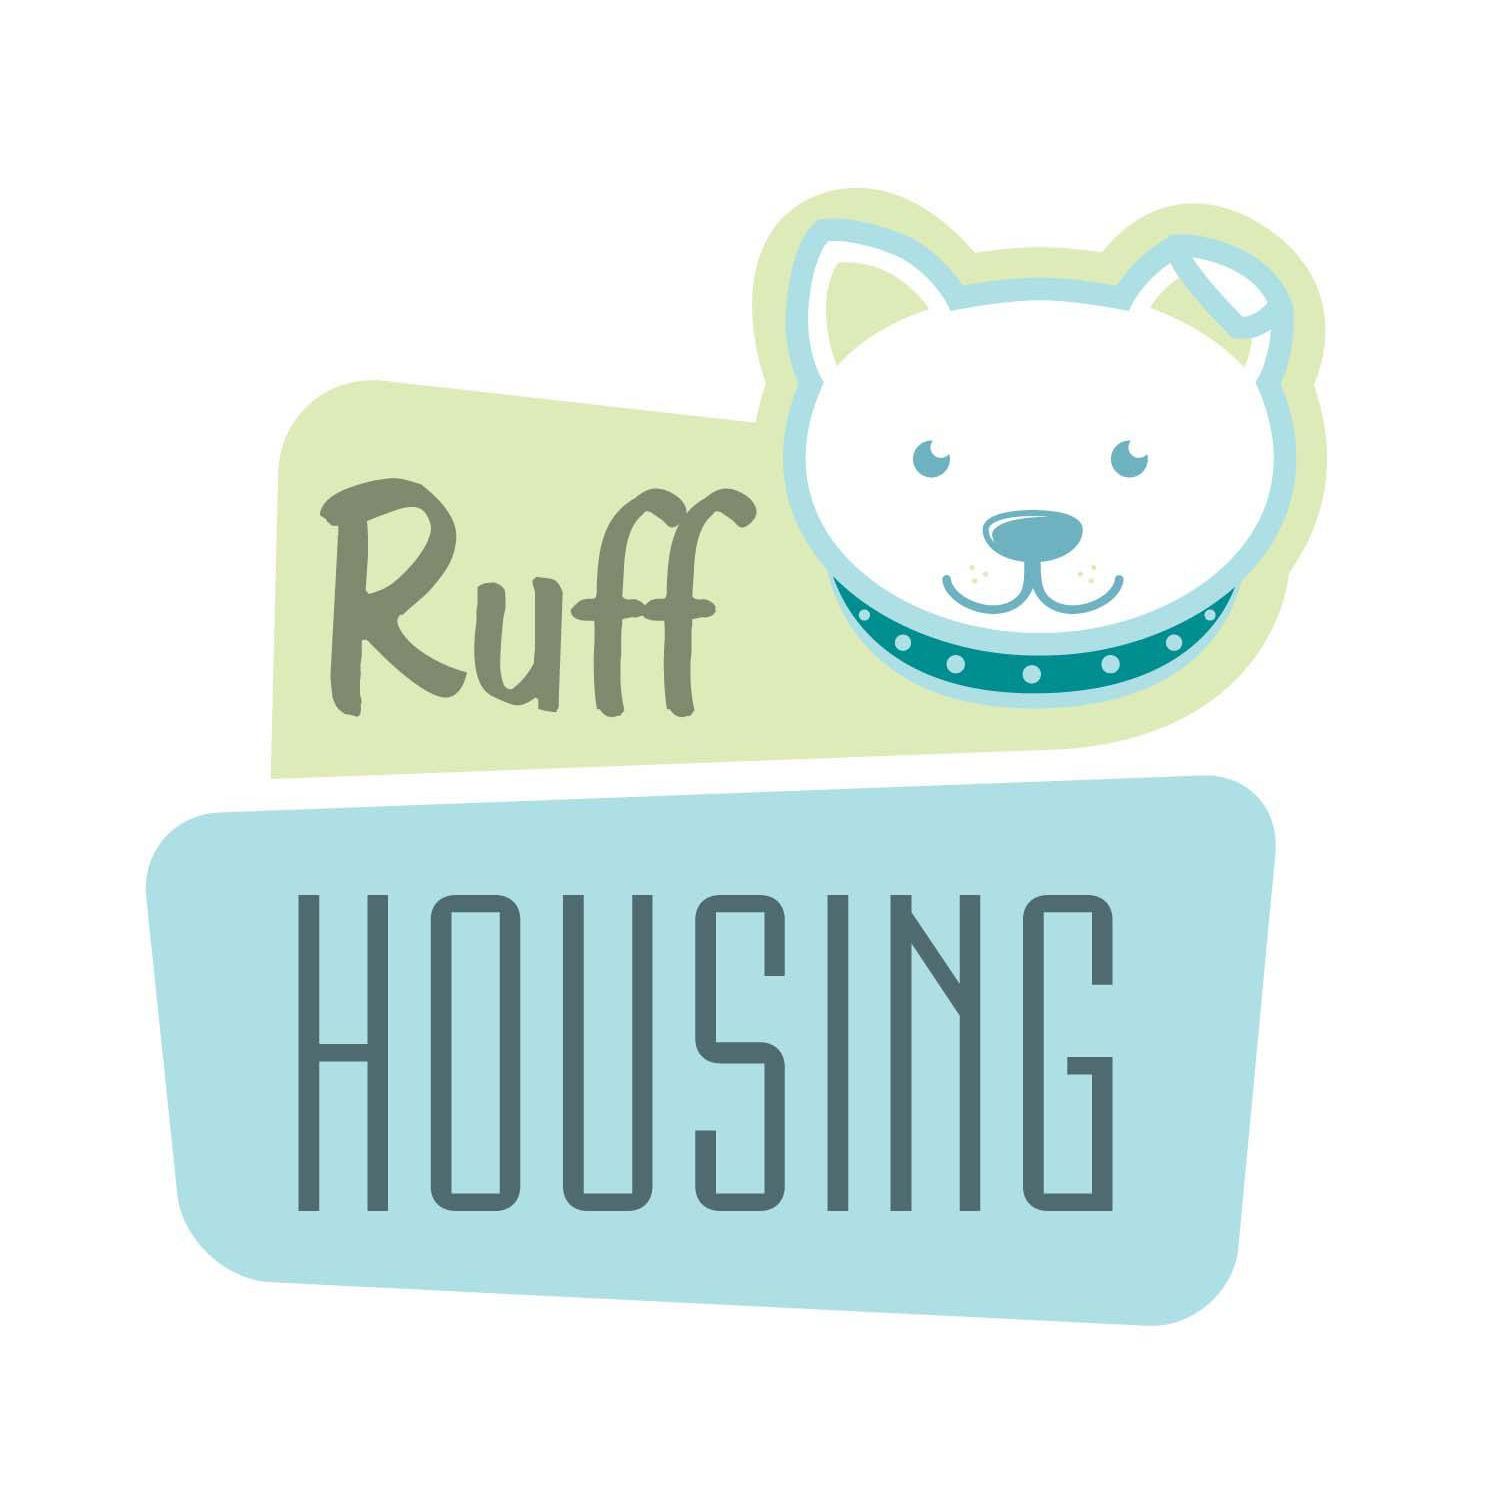 Ruff Housing Greensboro